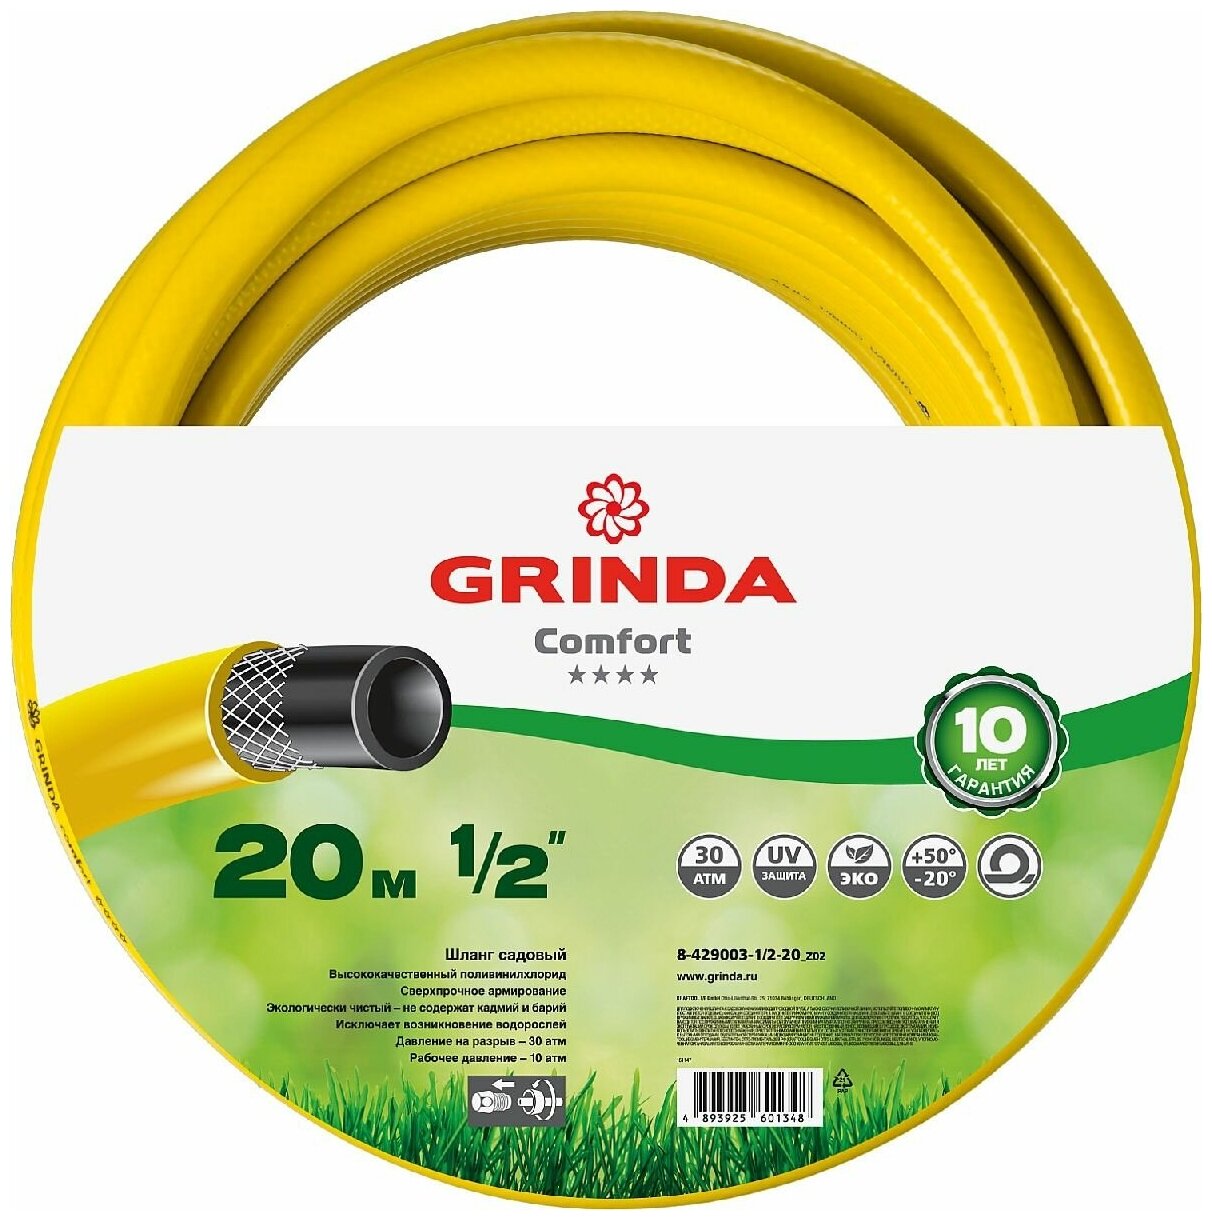 Поливочный шланг GRINDA Comfort 1 2 , 20 м, 30 атм, трехслойный, армированный (8-429003-1 2-20_z02)